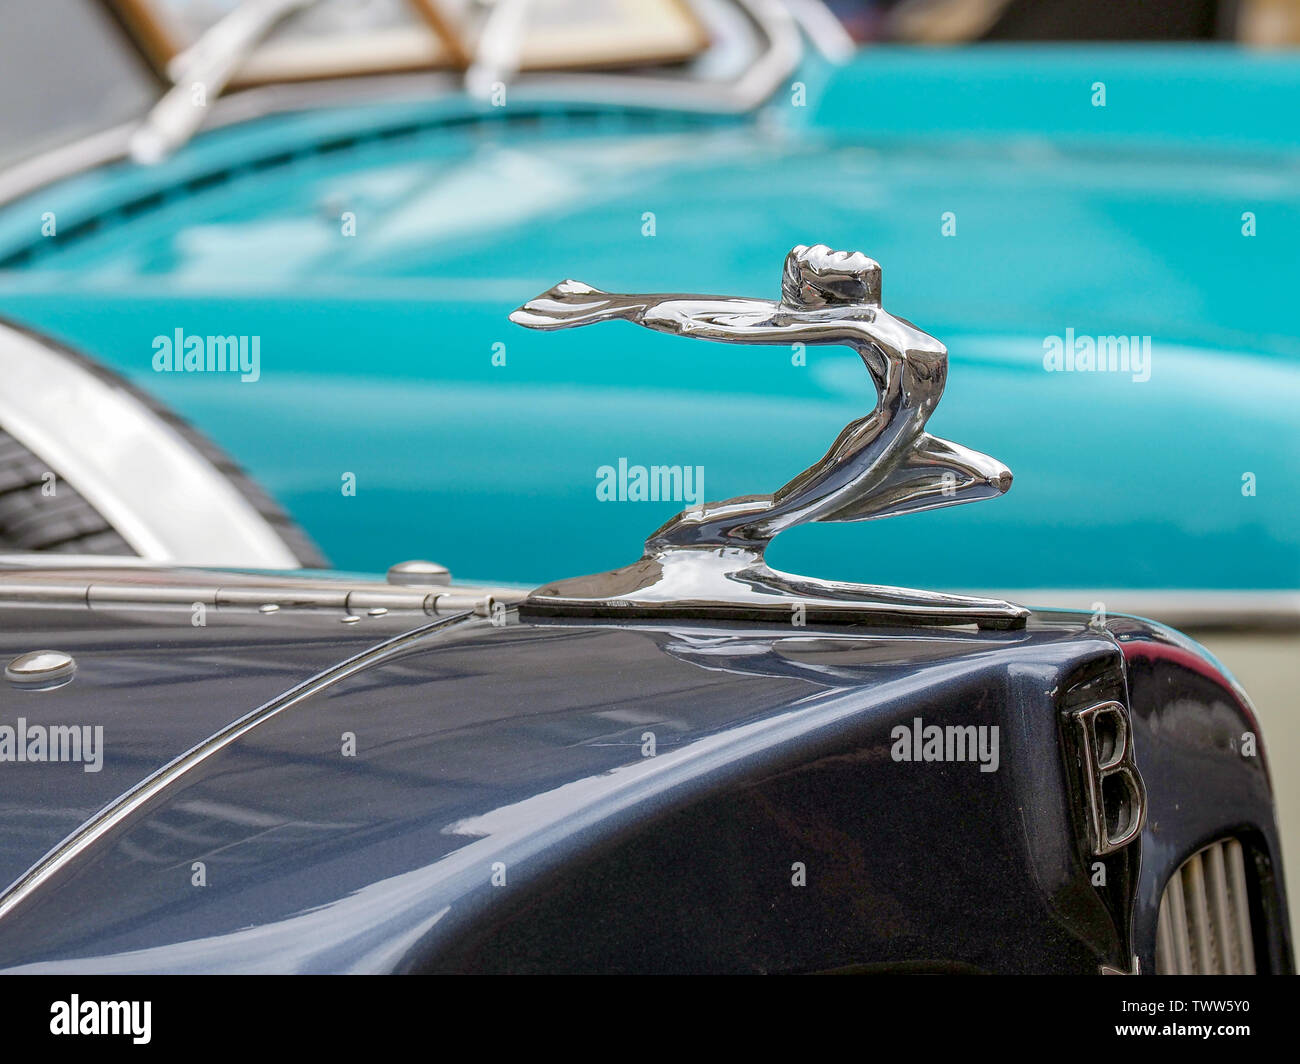 https://c8.alamy.com/comp/TWW5Y0/a-flying-lady-hood-ornament-on-a-dark-blue-bentley-motor-car-TWW5Y0.jpg